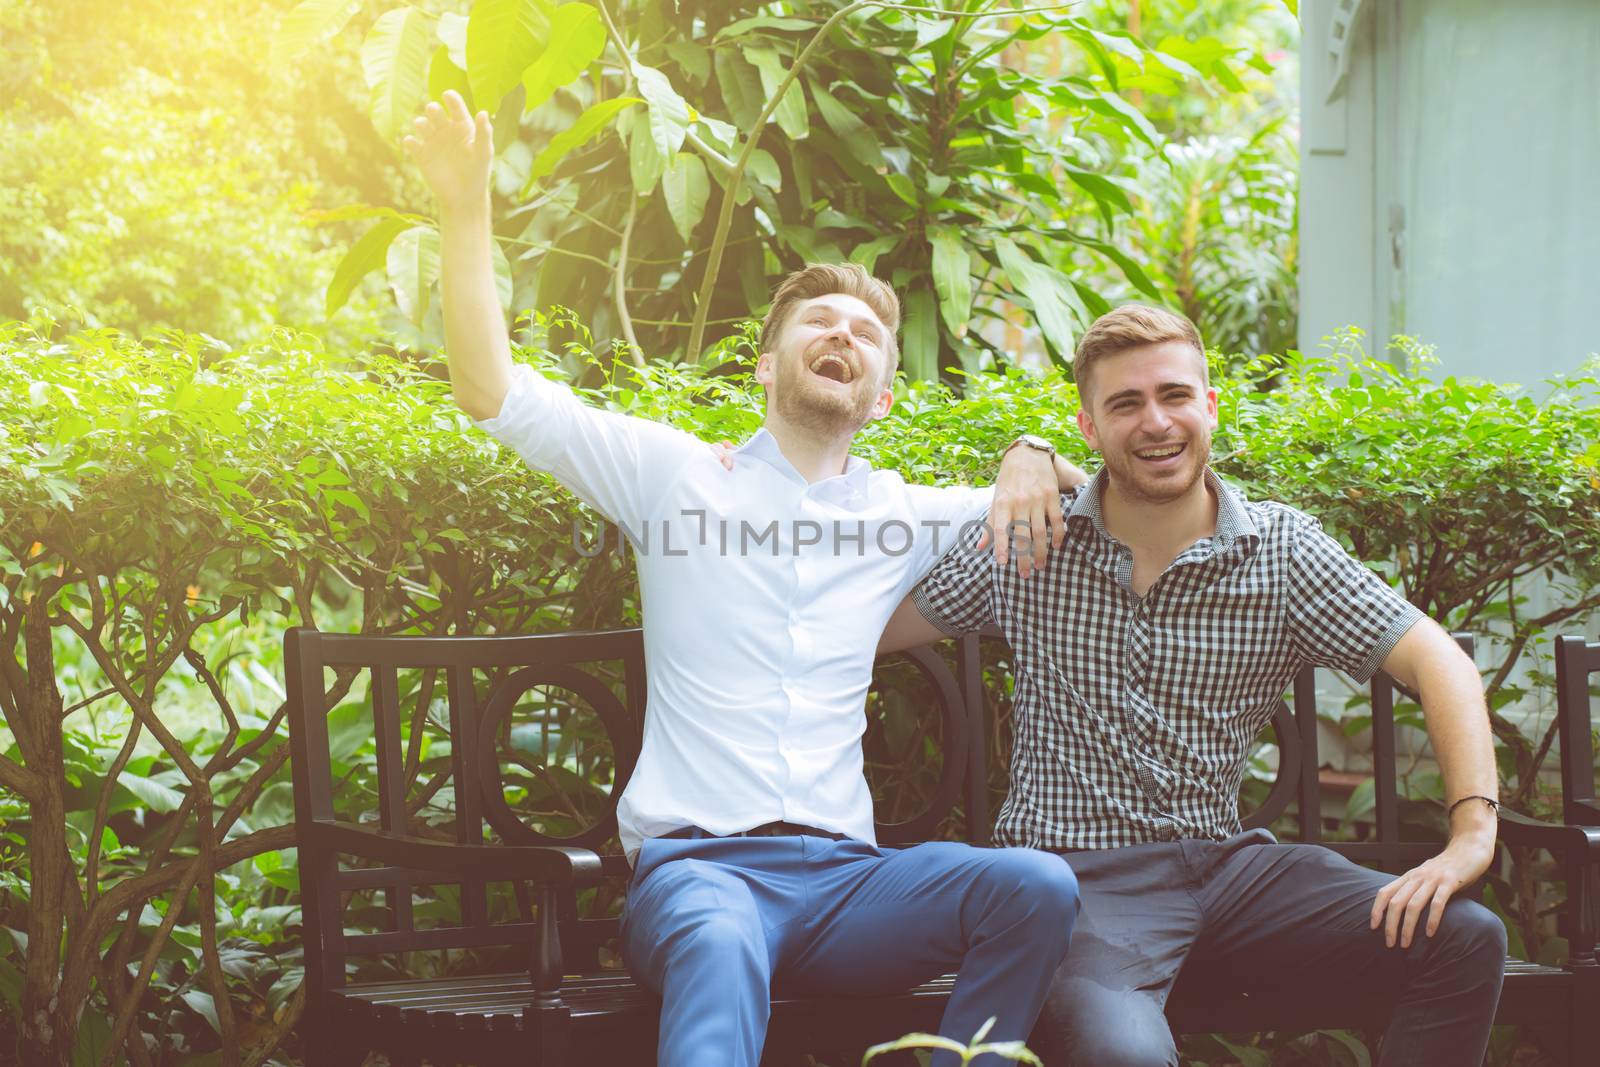 Two friends men talking standing in a garden.